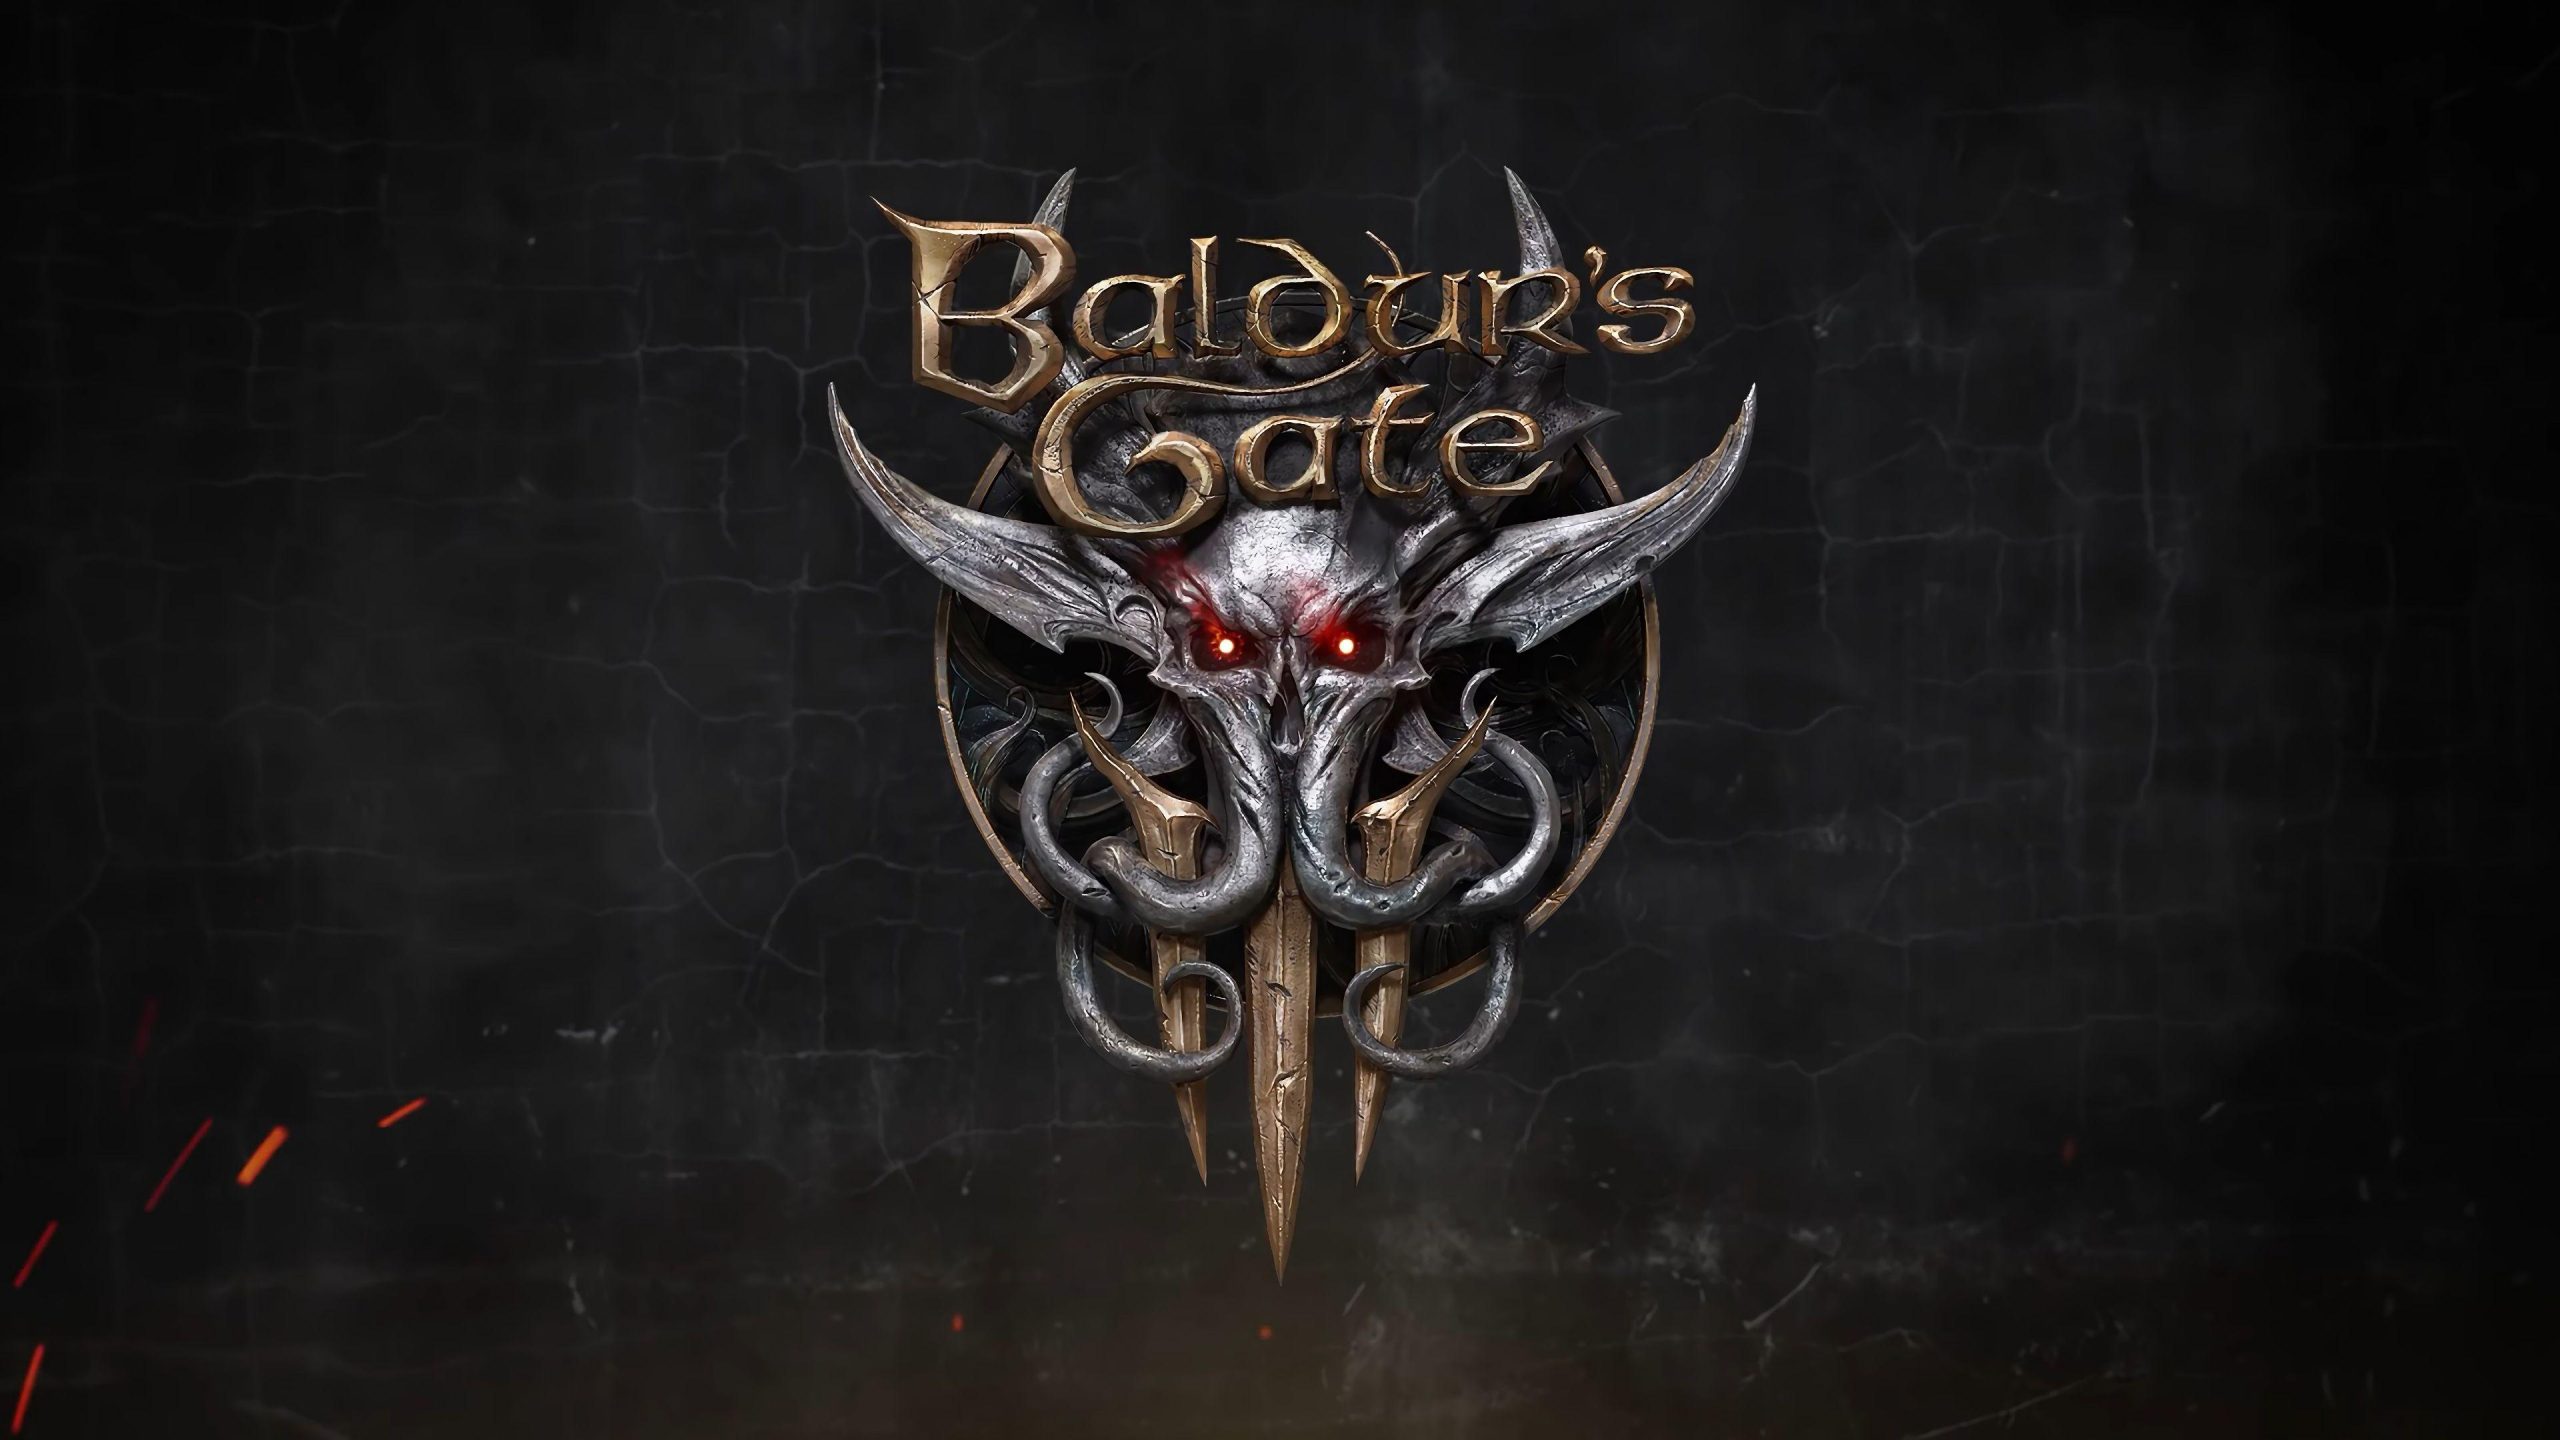 Baldur's Gate III Hd Wallpaper, Baldur's Gate III, Game